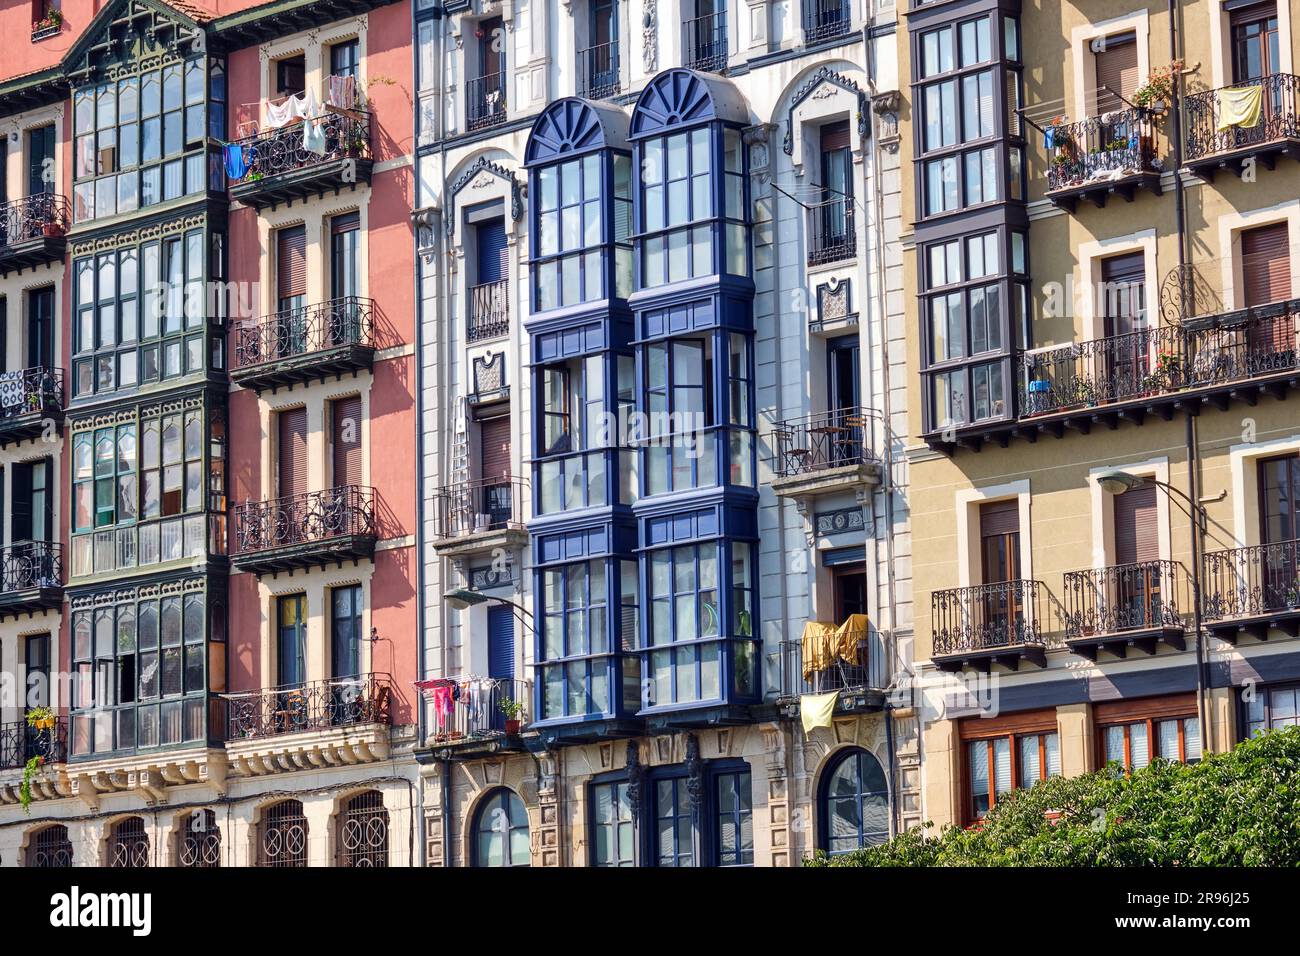 Quelques façades de maisons typiques de la vieille ville de Bilbao en Espagne Banque D'Images